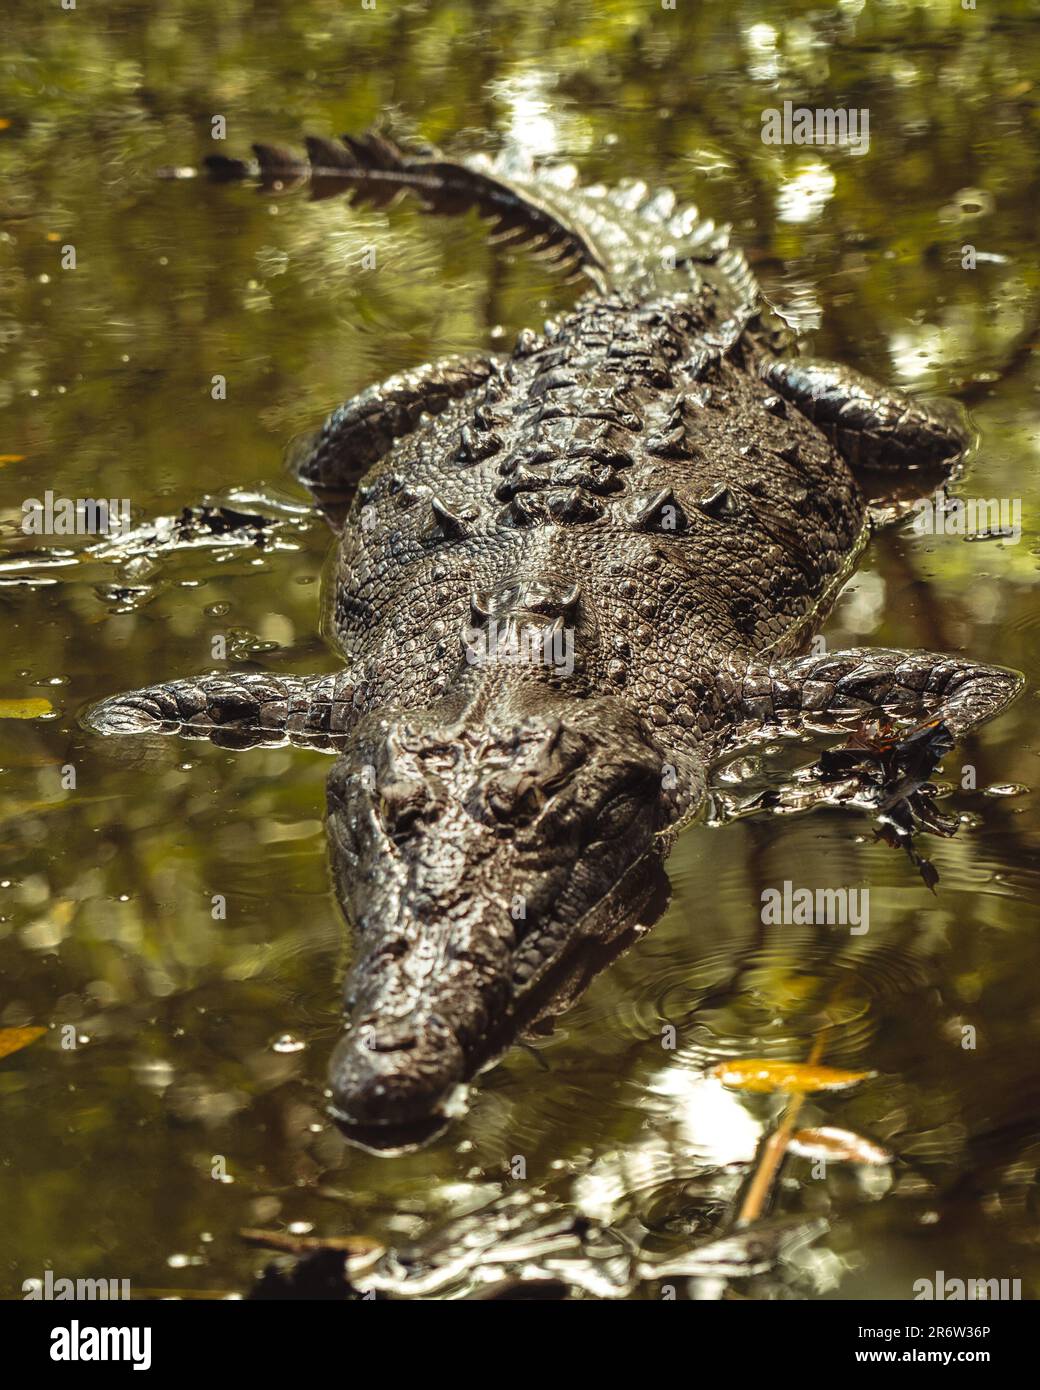 Un coccodrillo in agguato palude: L'antico predatore della natura si fonde perfettamente con il suo habitat acquoso, una rappresentazione di forza primitiva e stealt Foto Stock